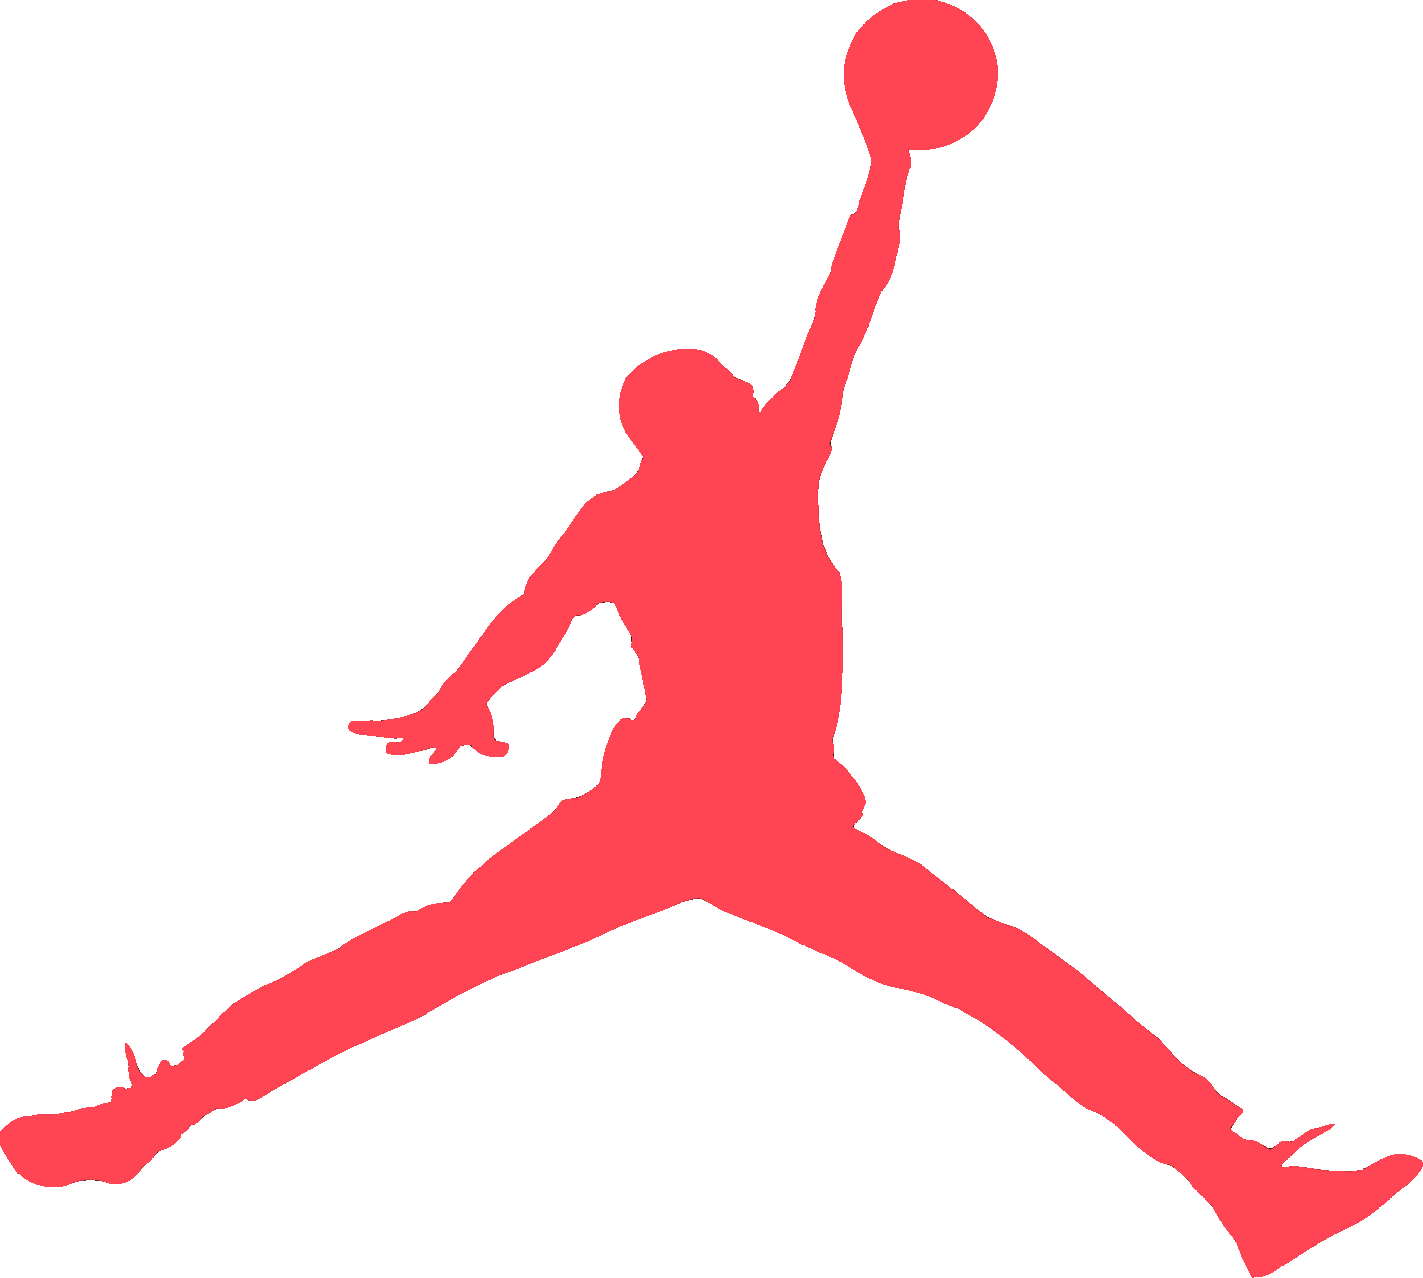 Related Logos For Jumpman Jordan Logo